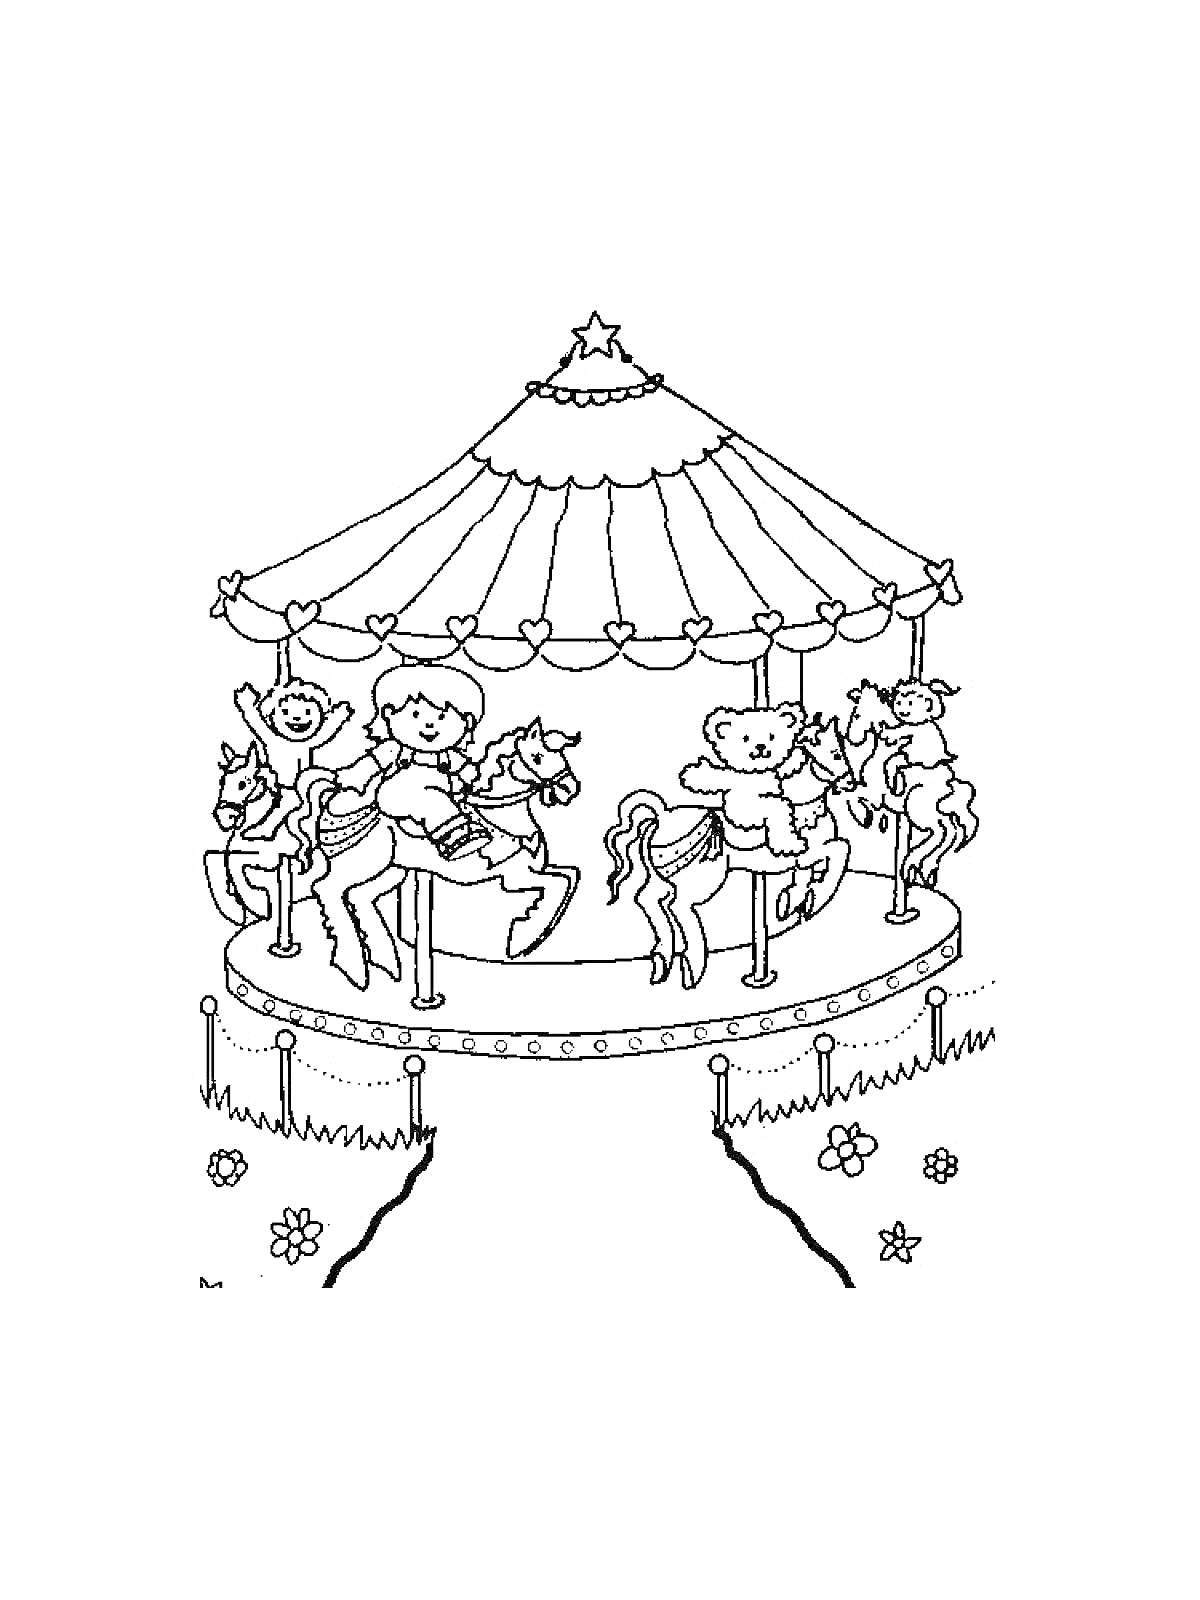 Раскраска Карусель с детьми, животными и украшениями на платформе, окруженной ограждением и цветами на земле.